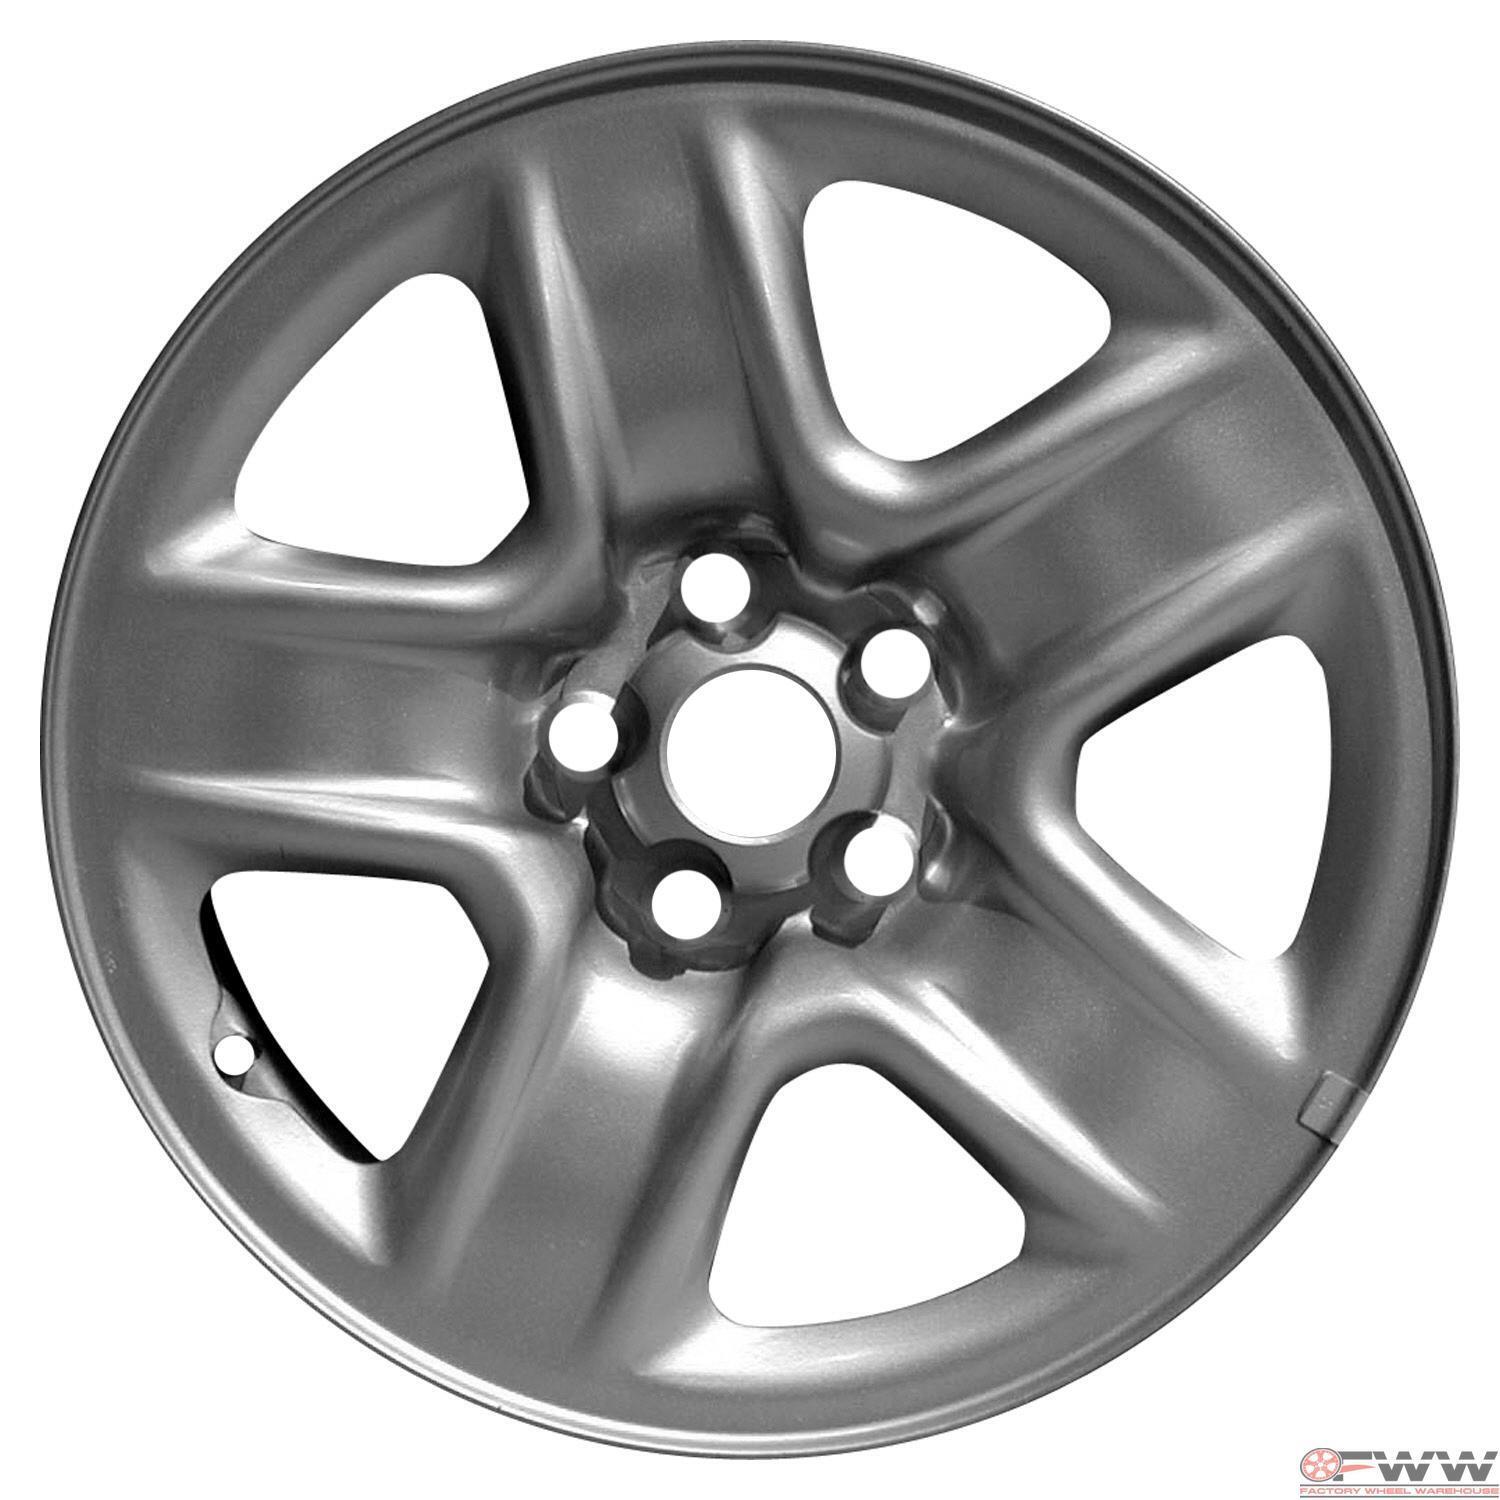 Toyota Fits RAV4 Wheel 2006-2012 17